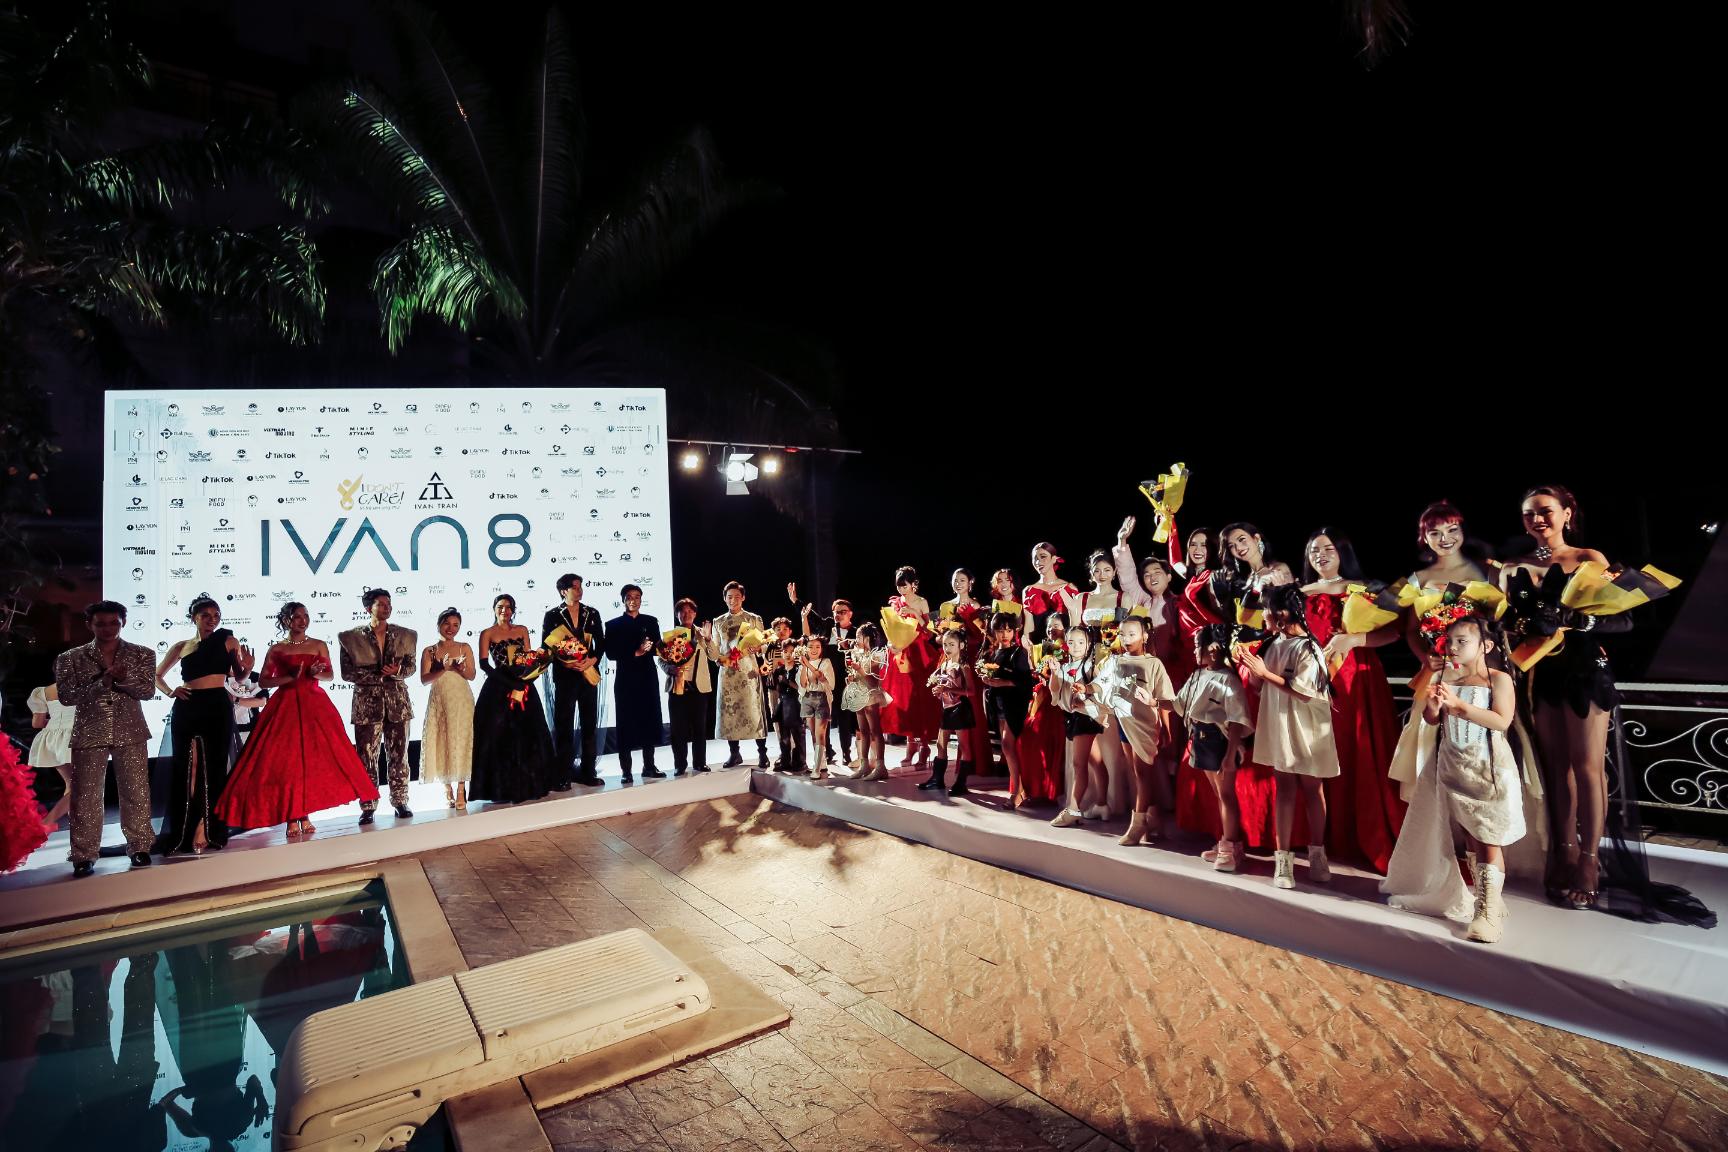 Ivan Trần tổ chức show thời trang IVAN8 thuộc dự án nghệ thuật cộng đồng 3 Ivan Trần tổ chức show thời trang IVAN8 trên phà Cần Thơ